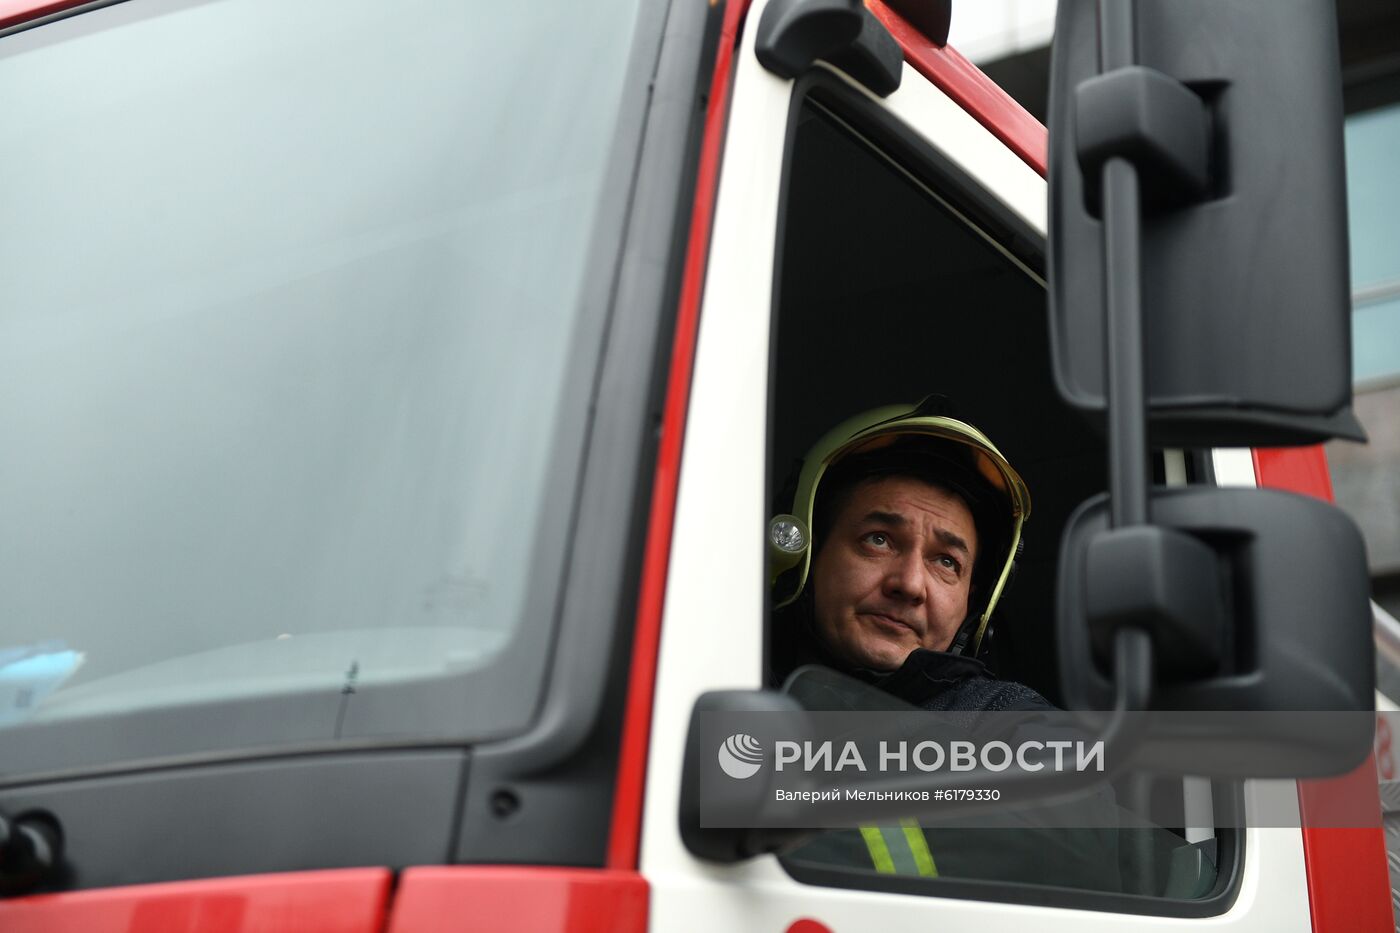 Показательные выступления работников Пожарно-спасательного центра Москвы